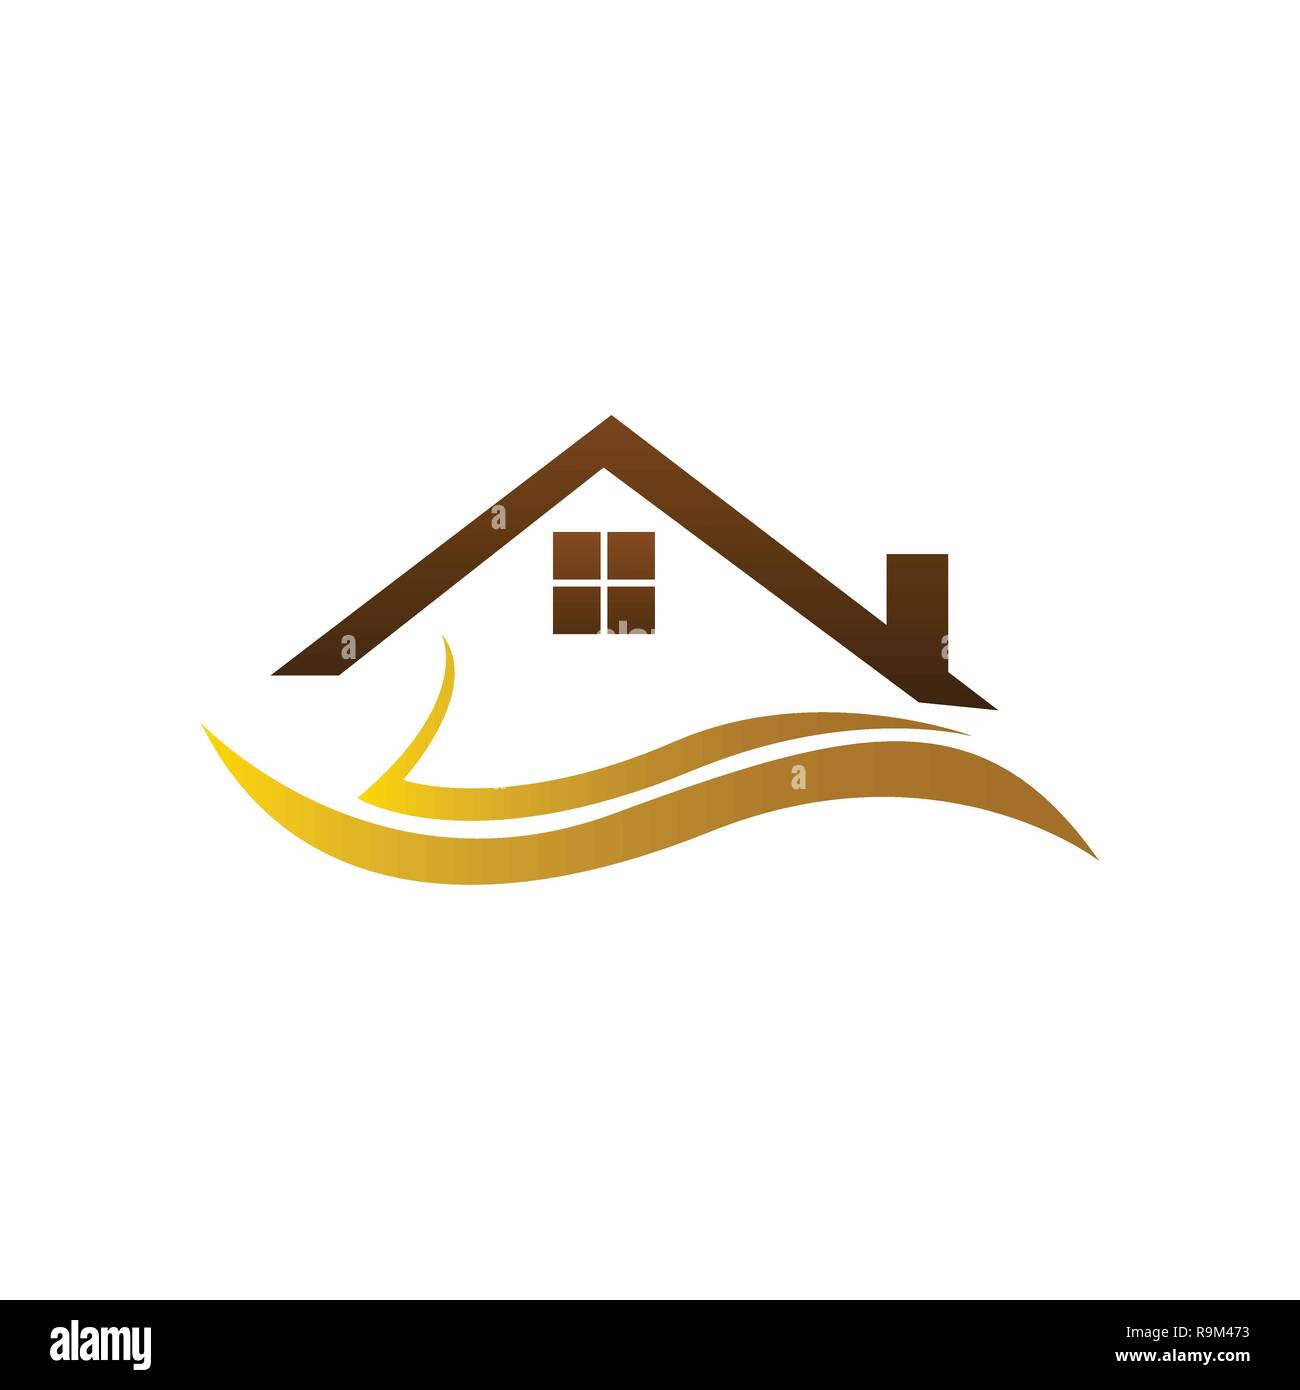 Real estate logo, home logo, house logo, simple design, vector icons. Stock Vector